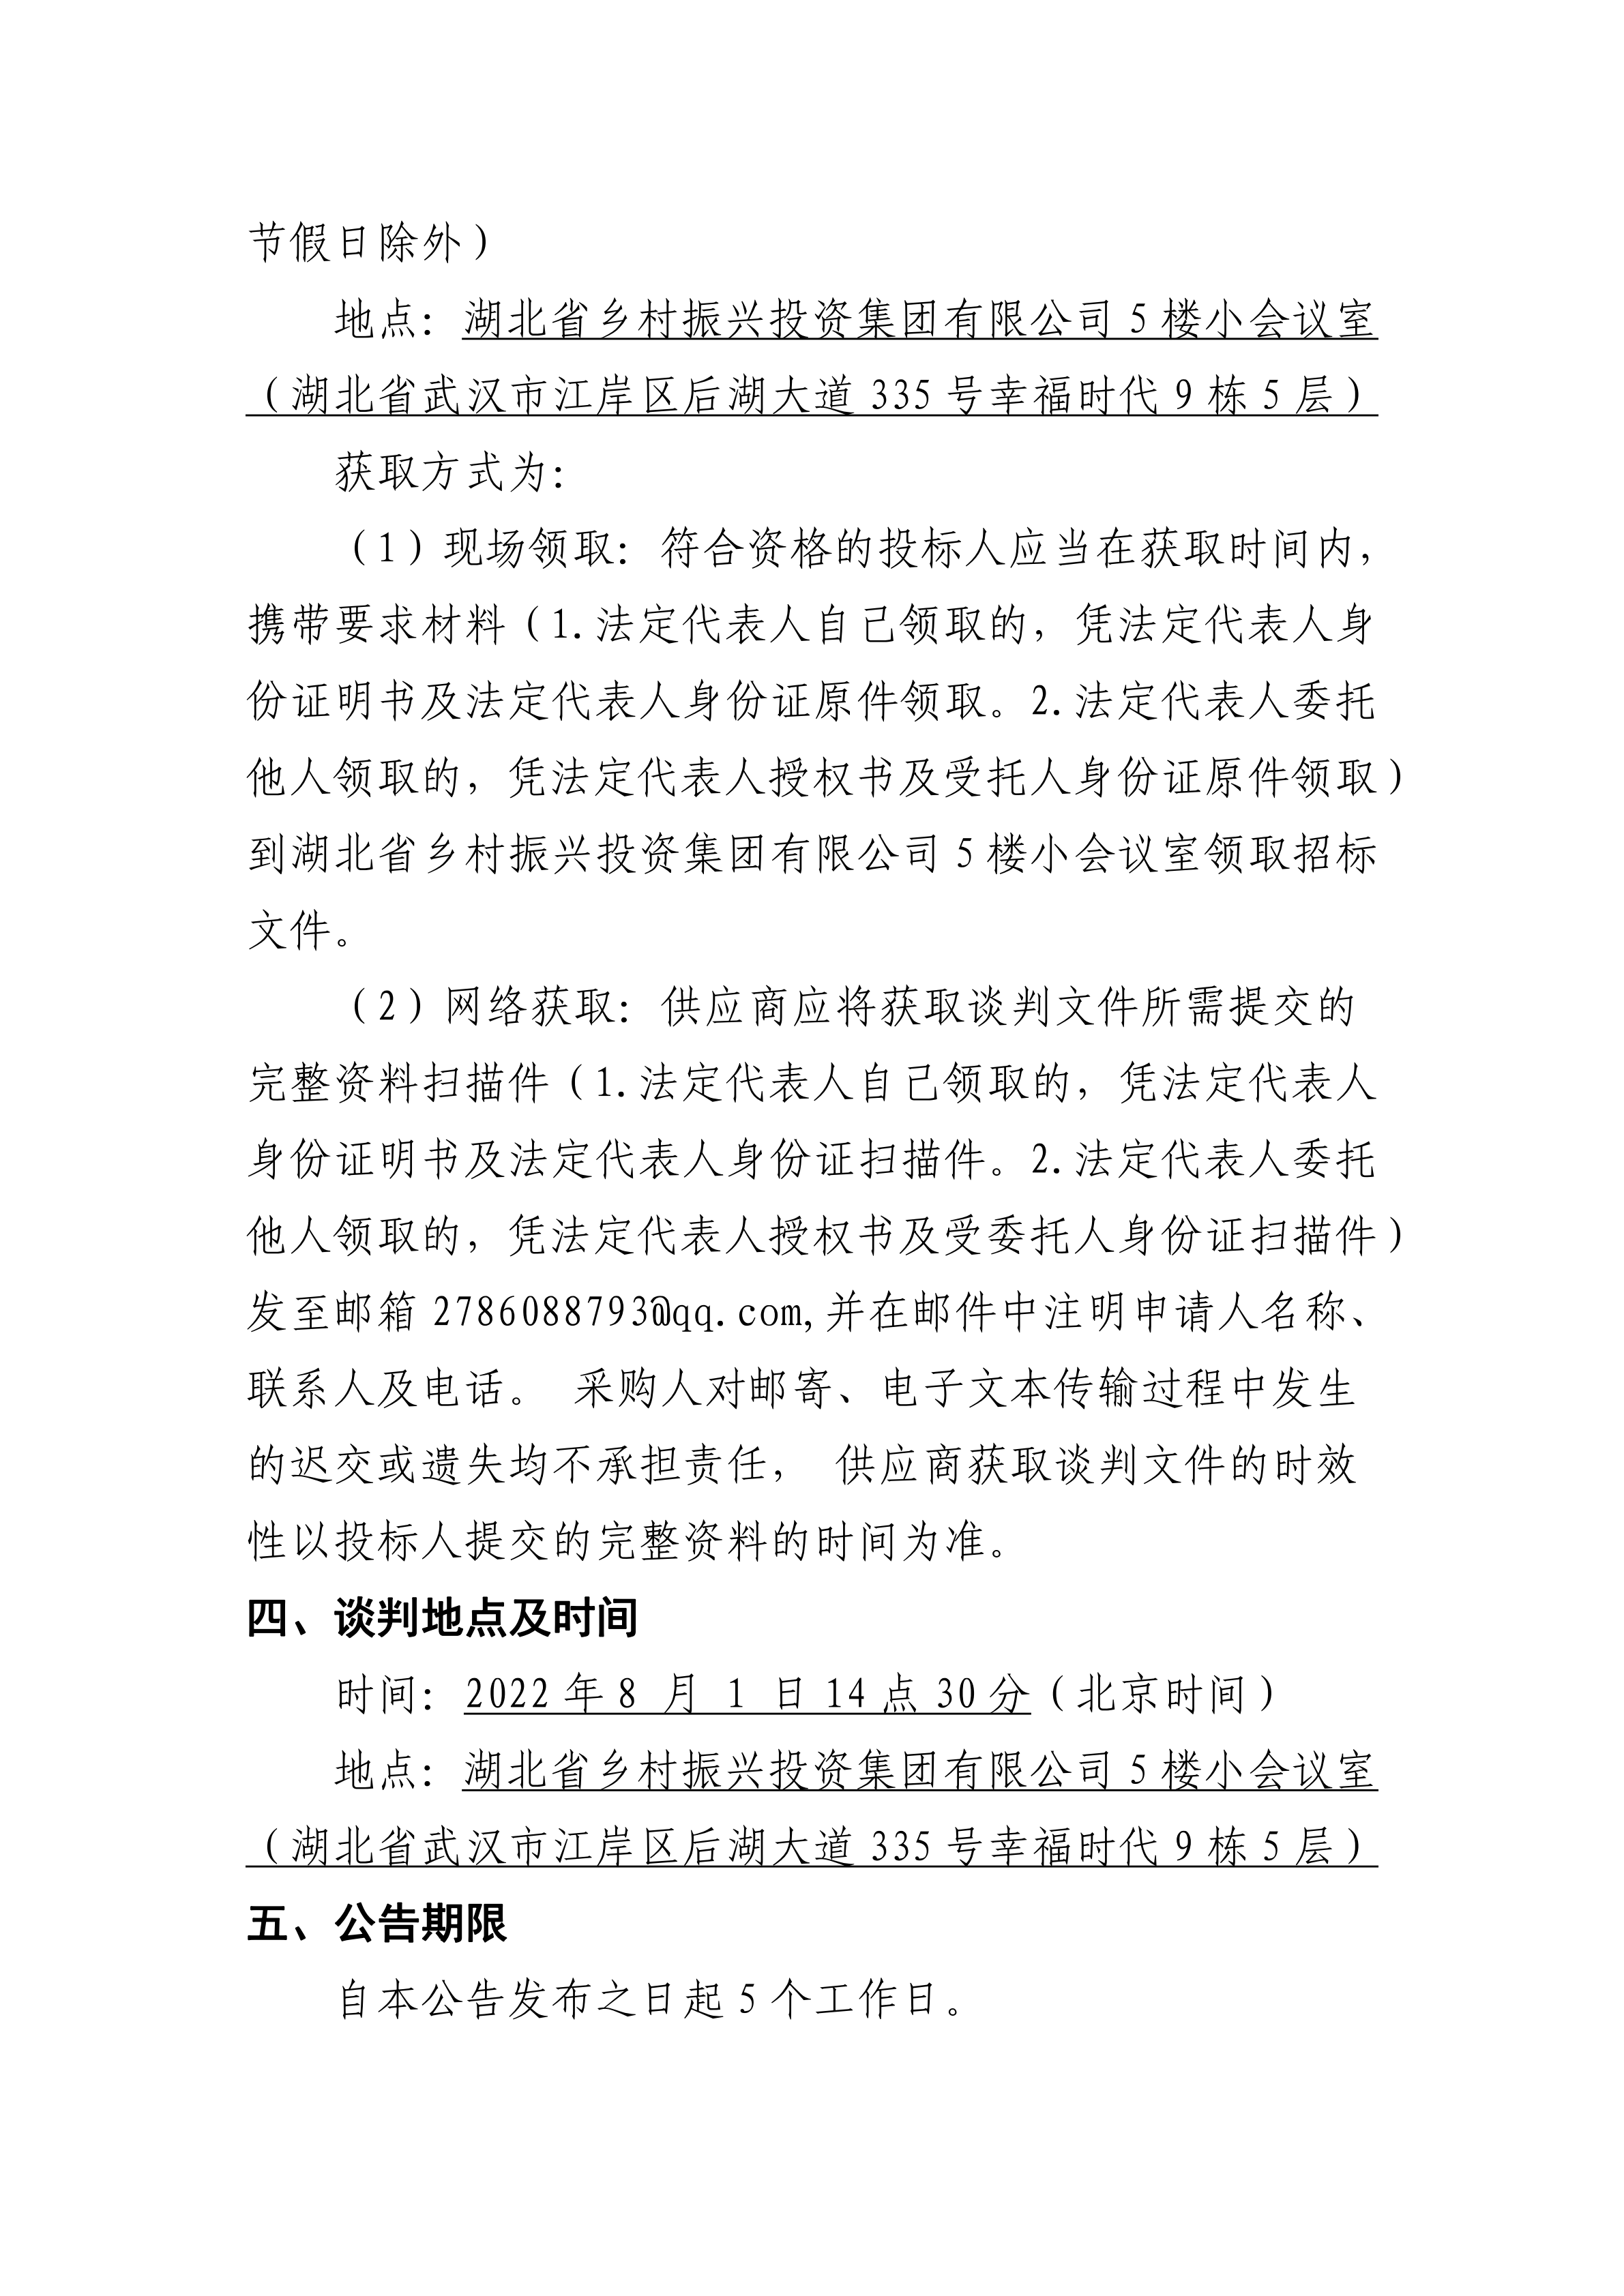 手机买球官网(中国)科技有限公司建设工程安全咨询服务项目竞争性谈判公告(0719)_02.png